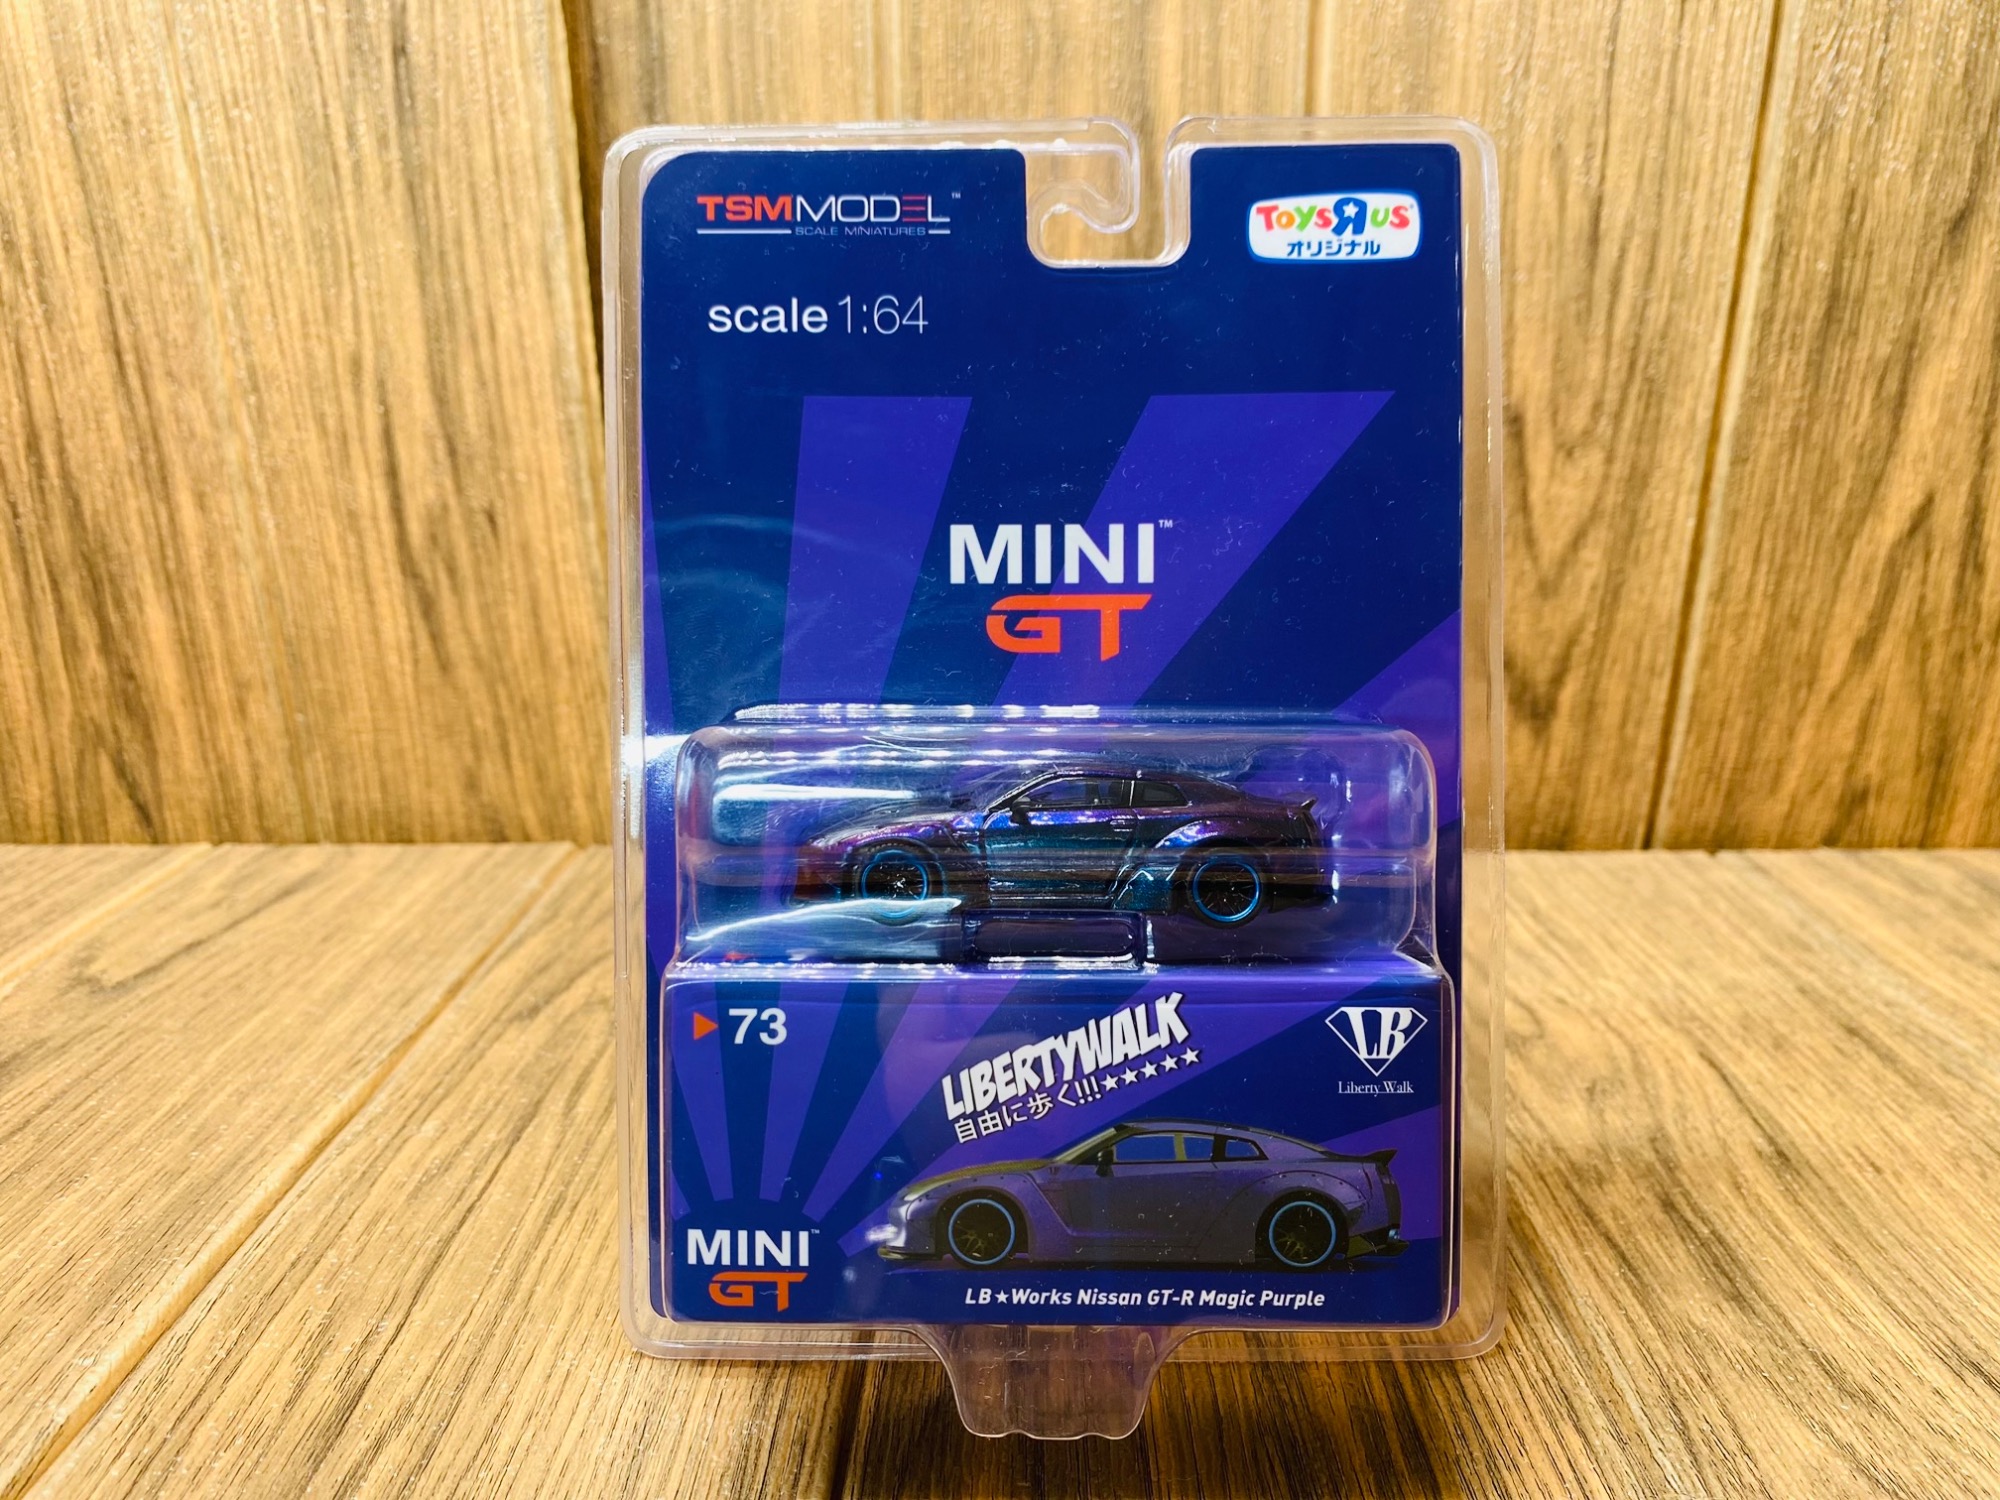 Mini Gt R35 Magic Purple, Skyline Purple Gtr, Mini Gt Gtr Magic